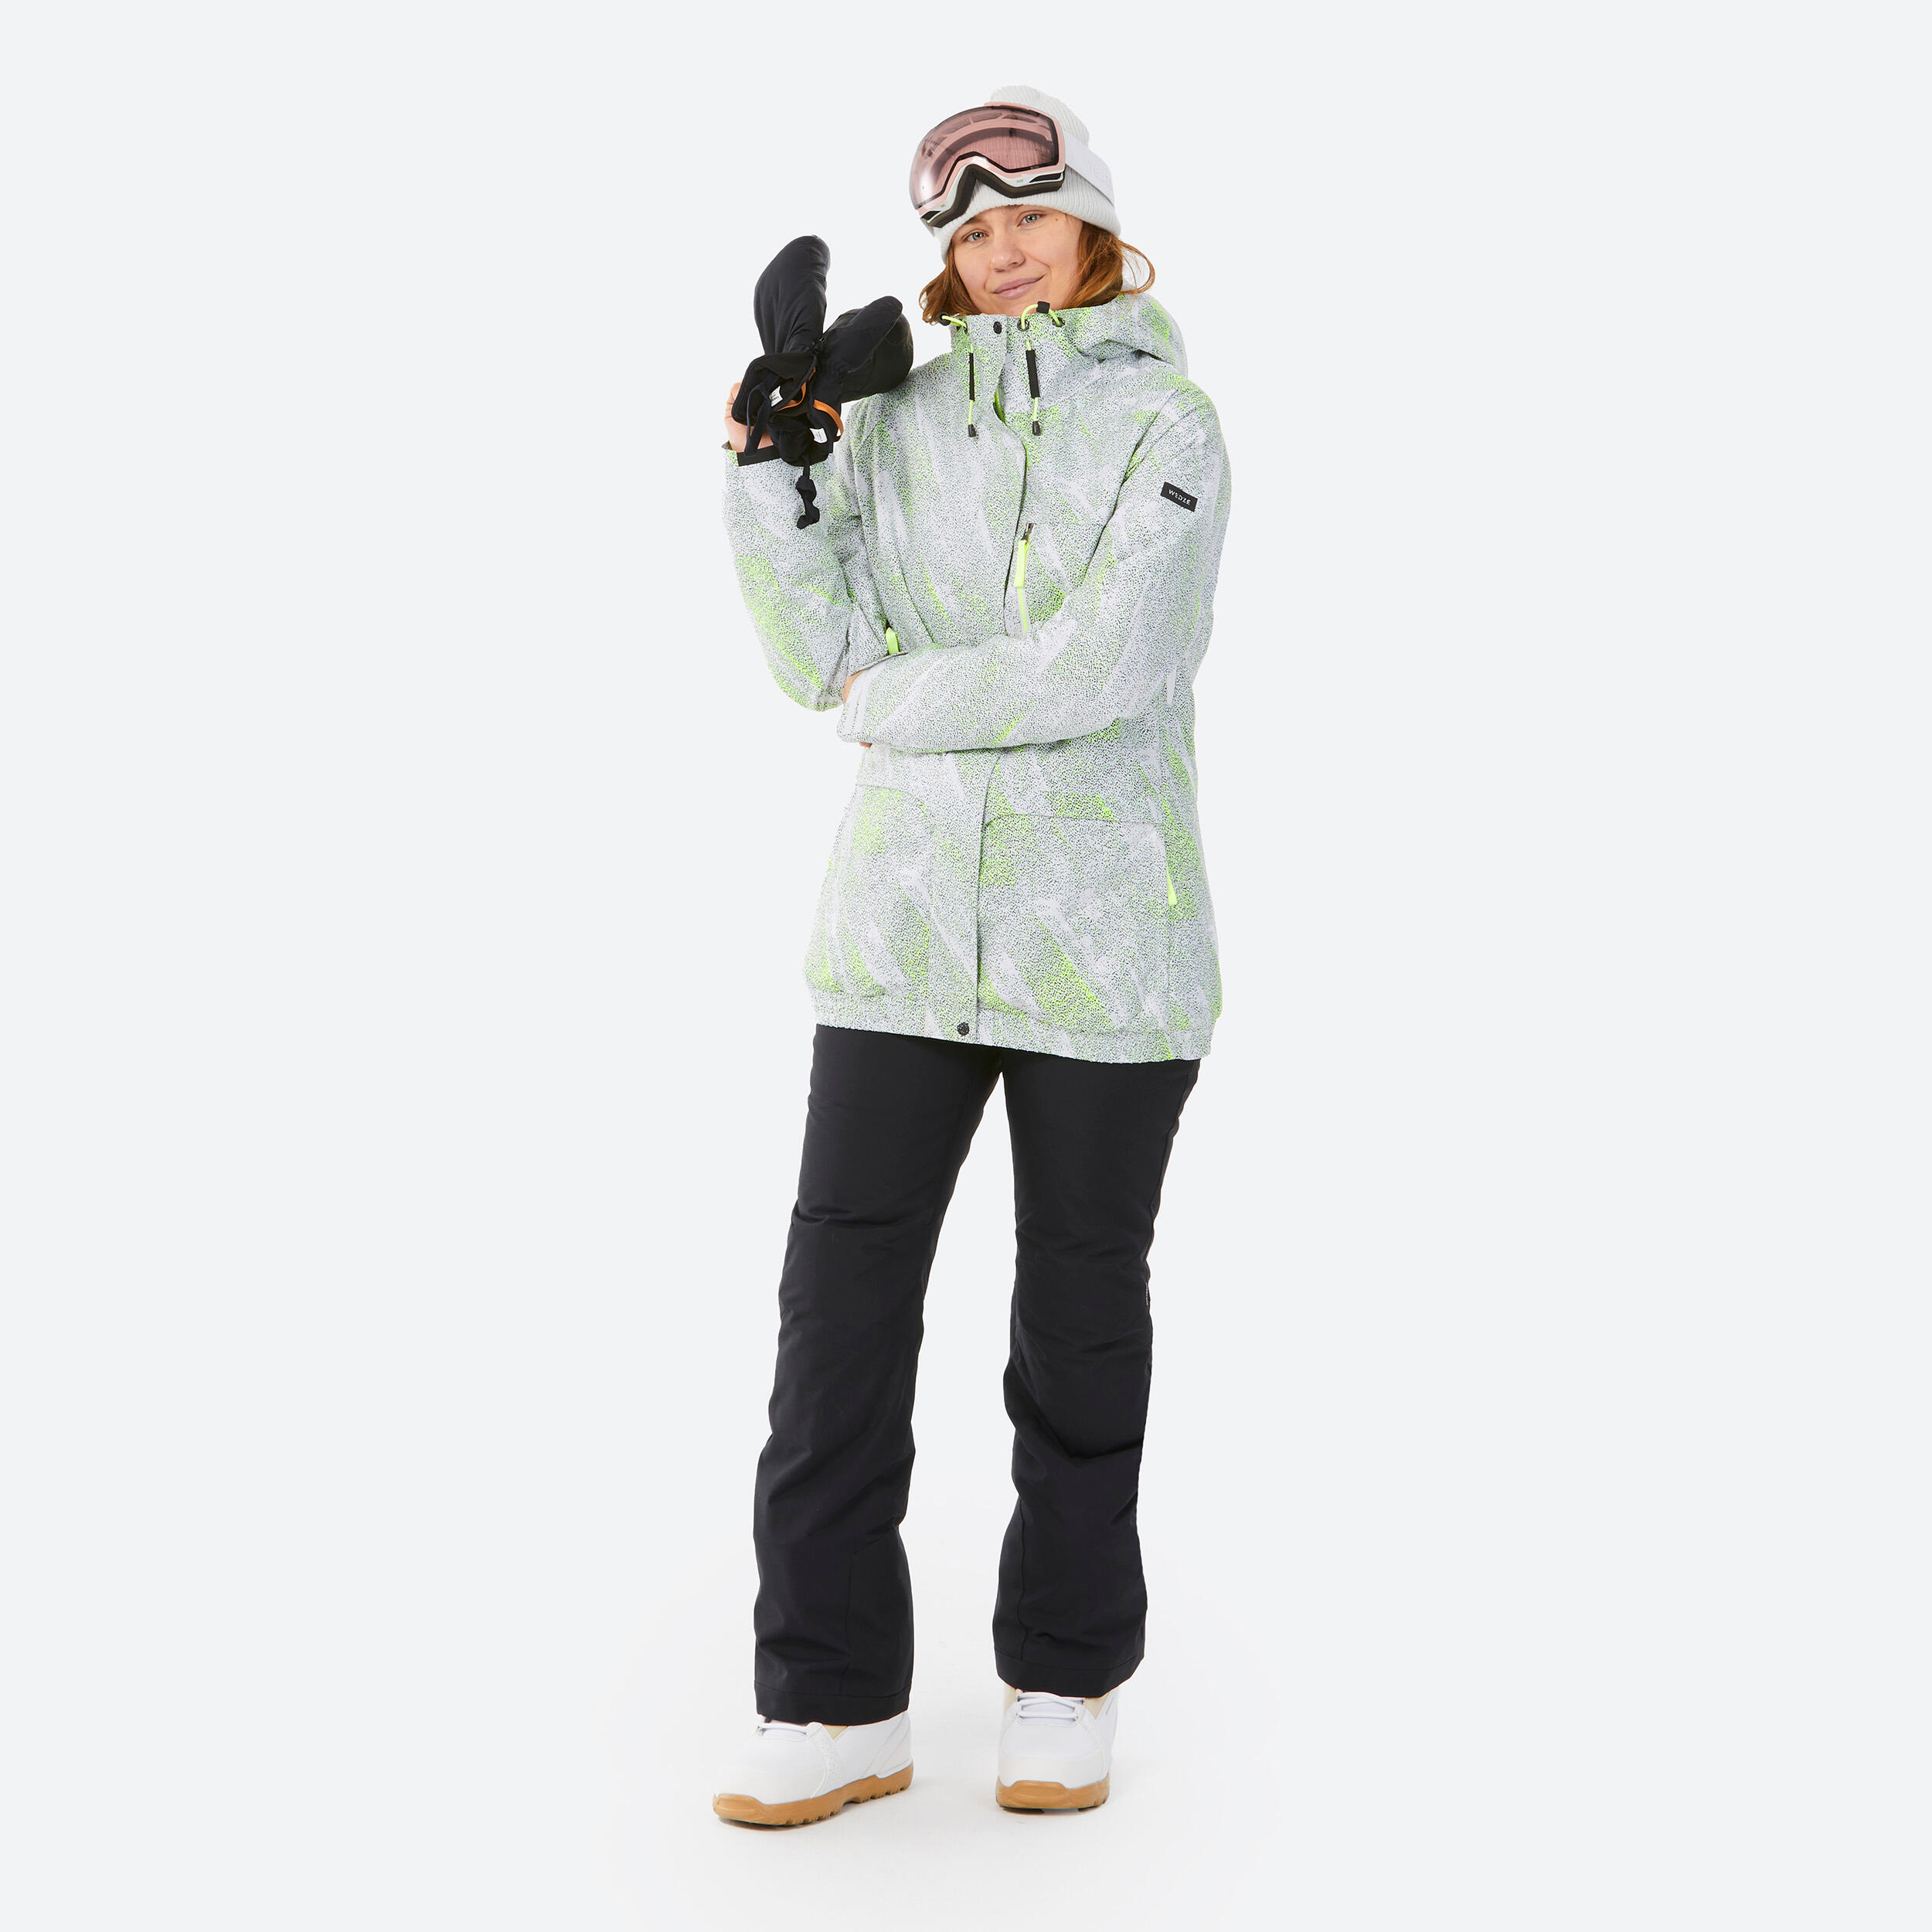 WOMEN'S SNB 100 SNOWBOARD JACKET - WHITE GRAPH 6/13